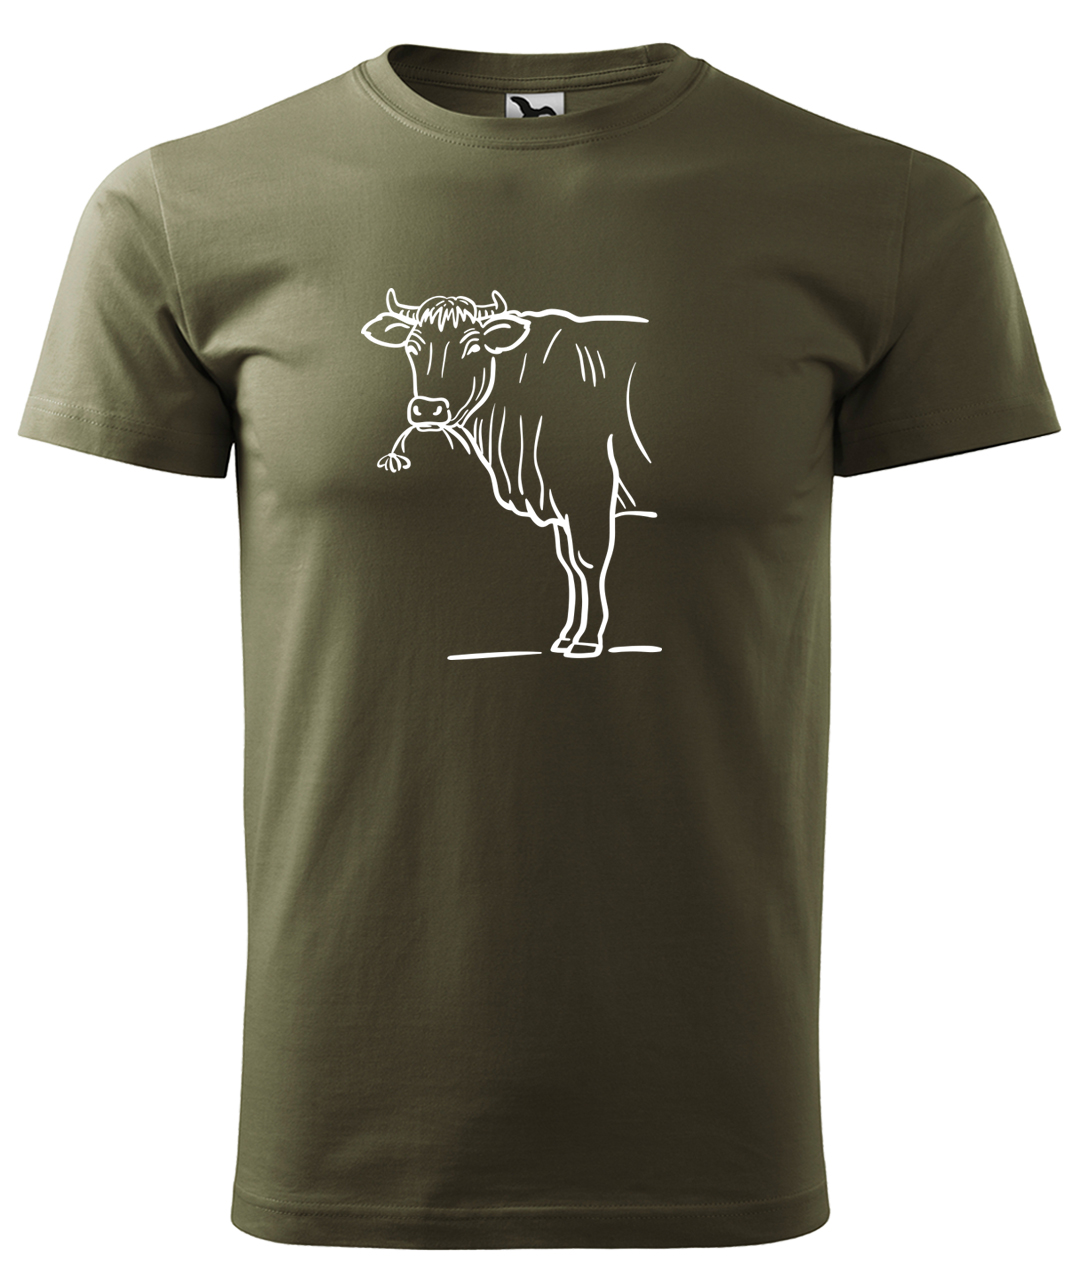 Dětské tričko s krávou - Býk Velikost: 8 let / 134 cm, Barva: Military (69), Délka rukávu: Krátký rukáv